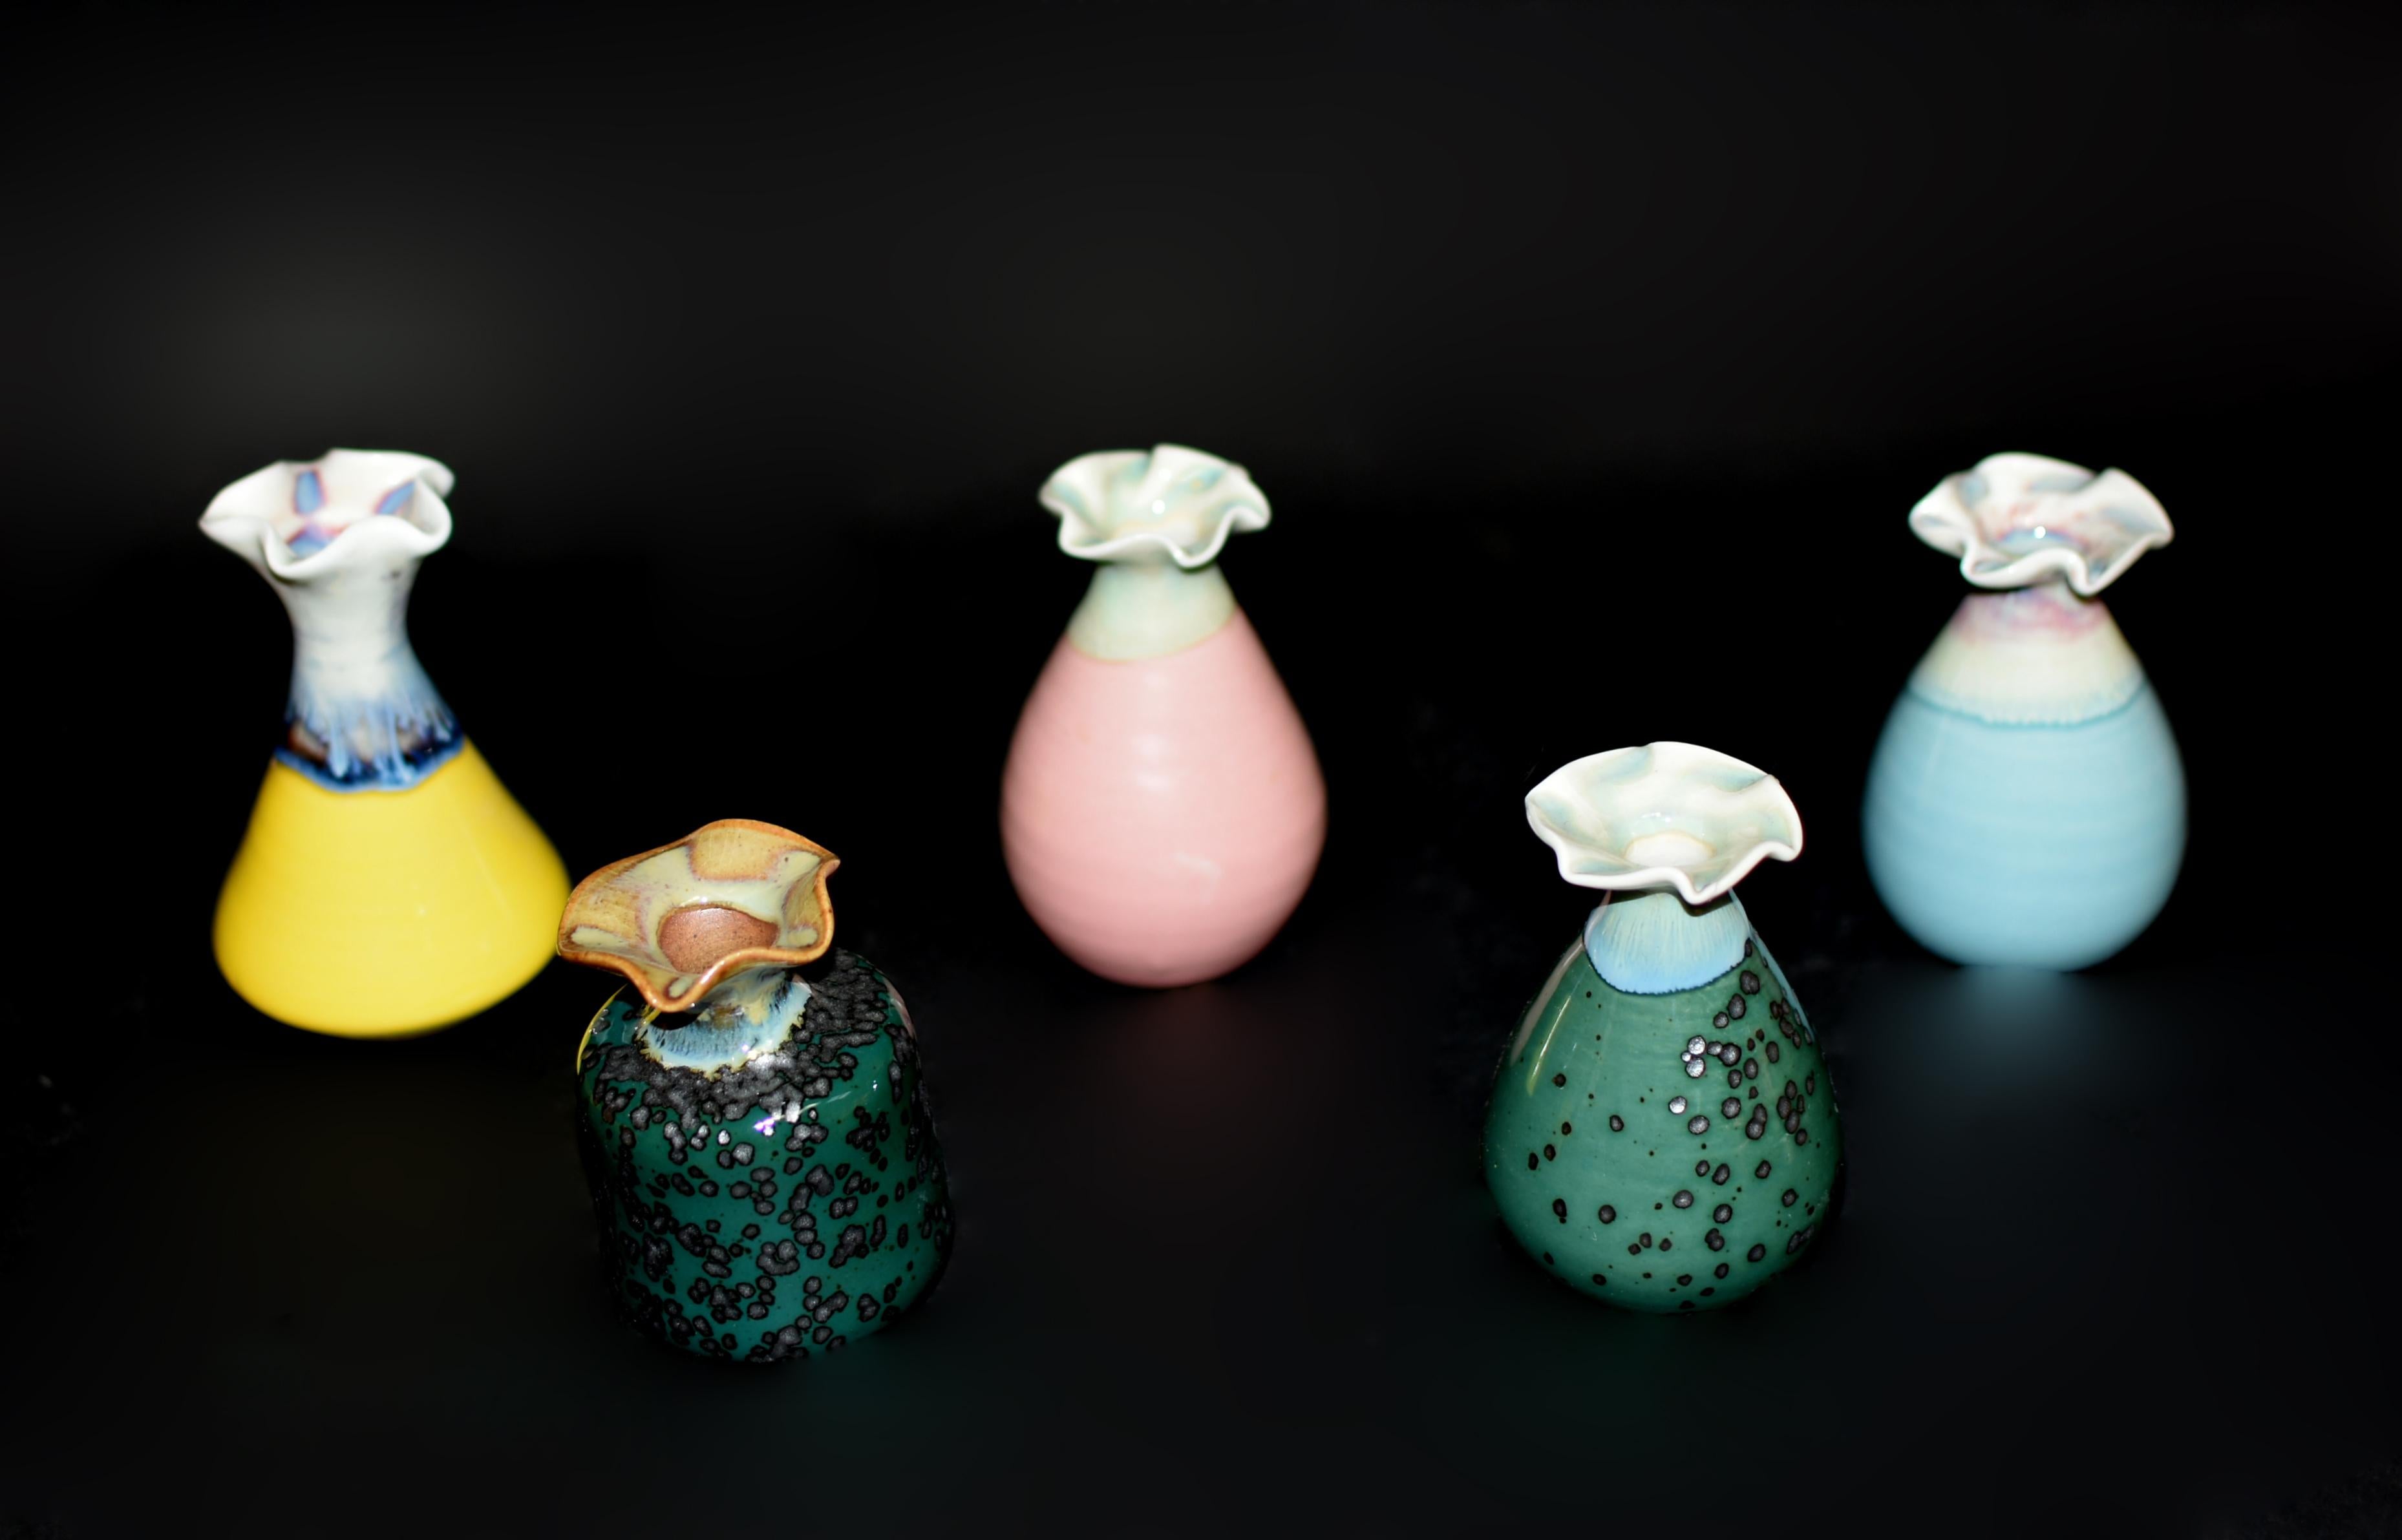 Sehen Sie sich eine Kollektion von 5 kleinen japanischen Wabi Sabi-Porzellanvasen an, von denen jede eine poetische Feier der Jahreszeiten und Naturszenen darstellt. Eine ist mit einer romantischen Kirschblütenglasur in Himmelblau versehen, die an